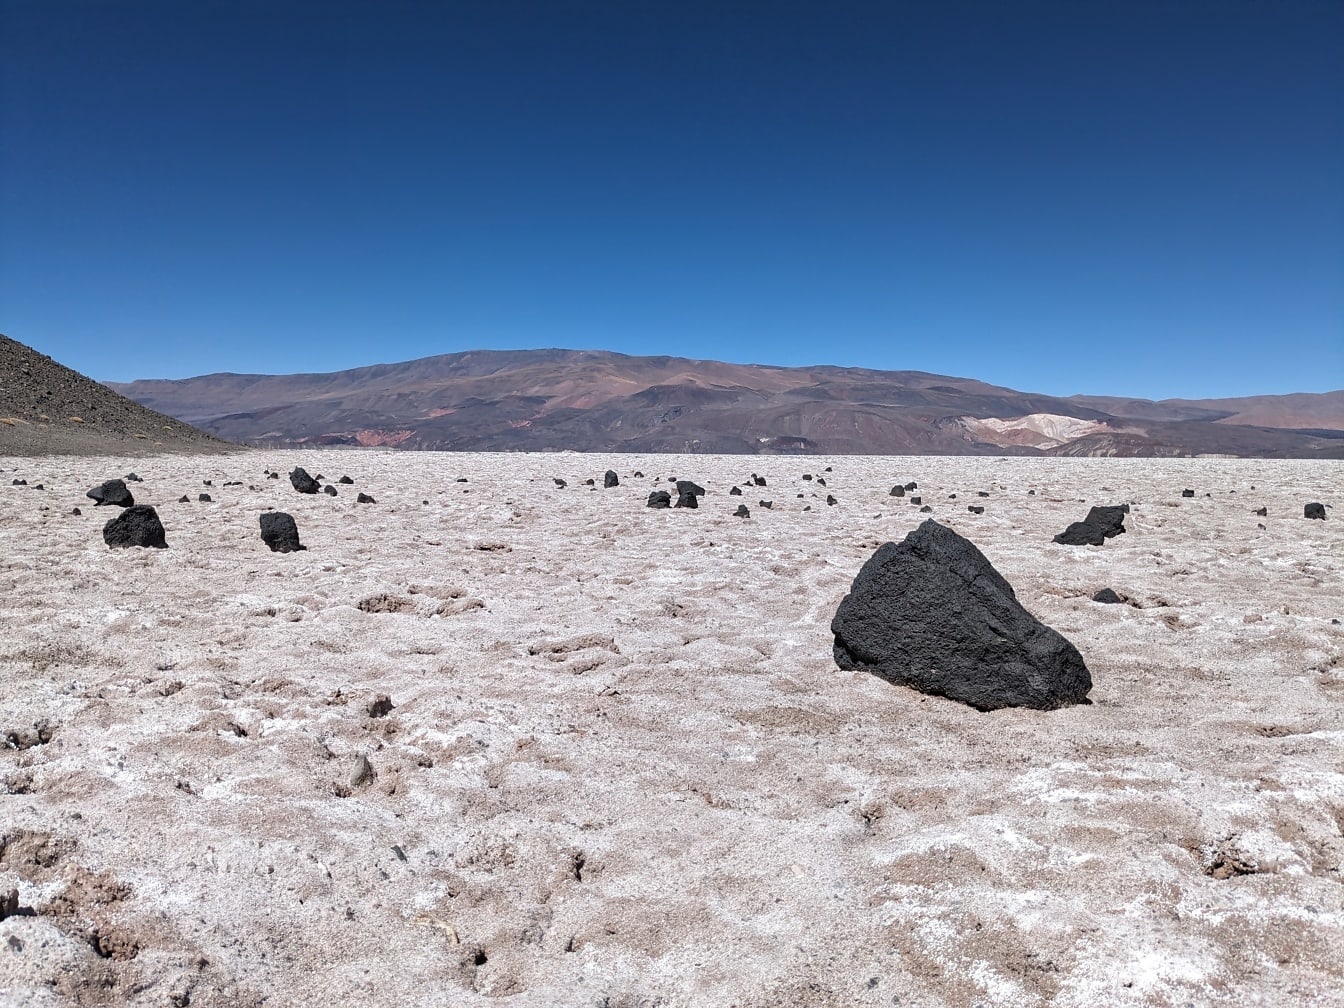 Phong cảnh đá với đá núi lửa đen trên trầm tích muối trắng trên sa mạc